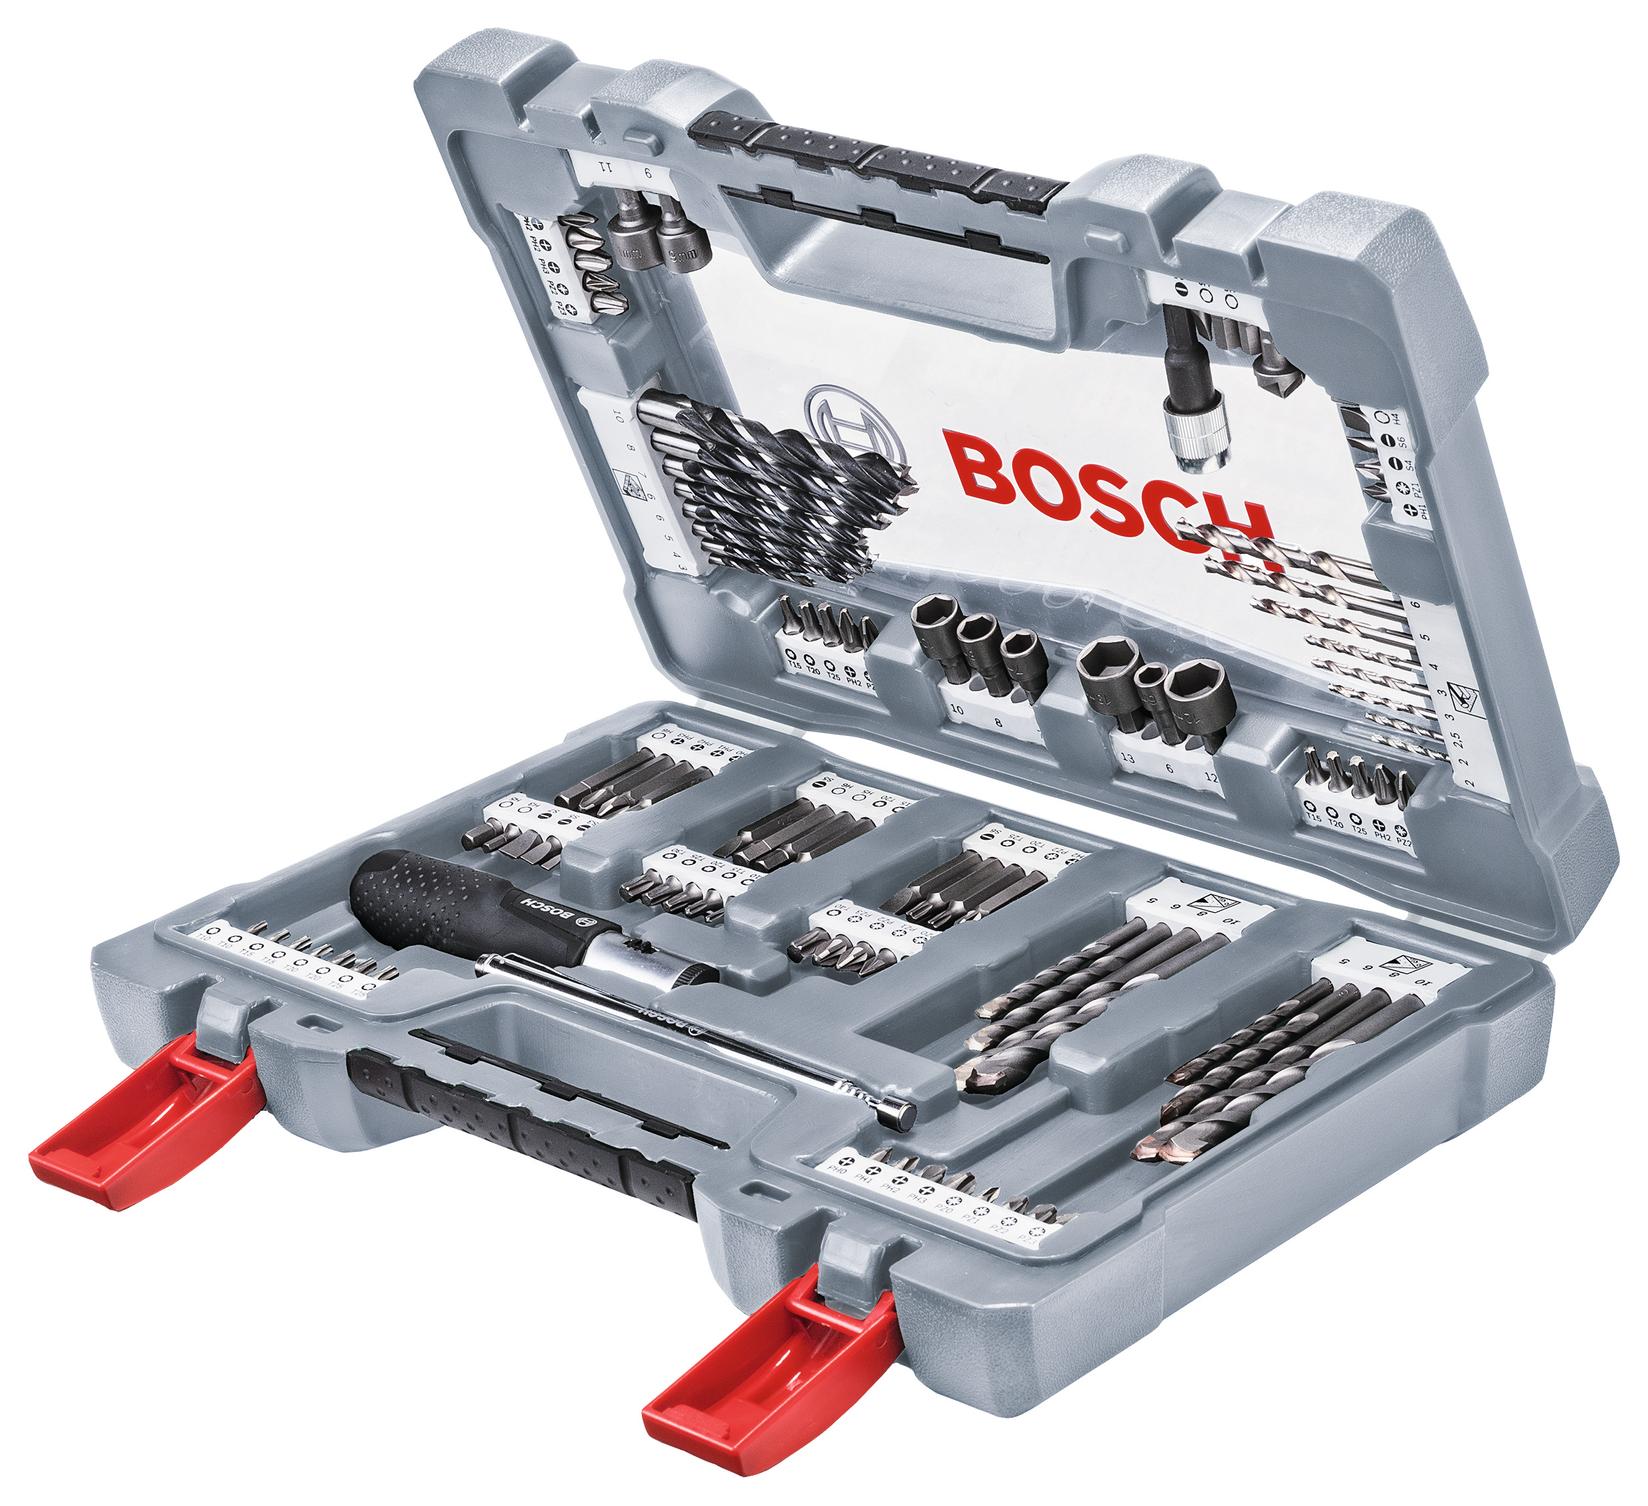 Bosch 105-delni set burgija i bitova (2608P00236)